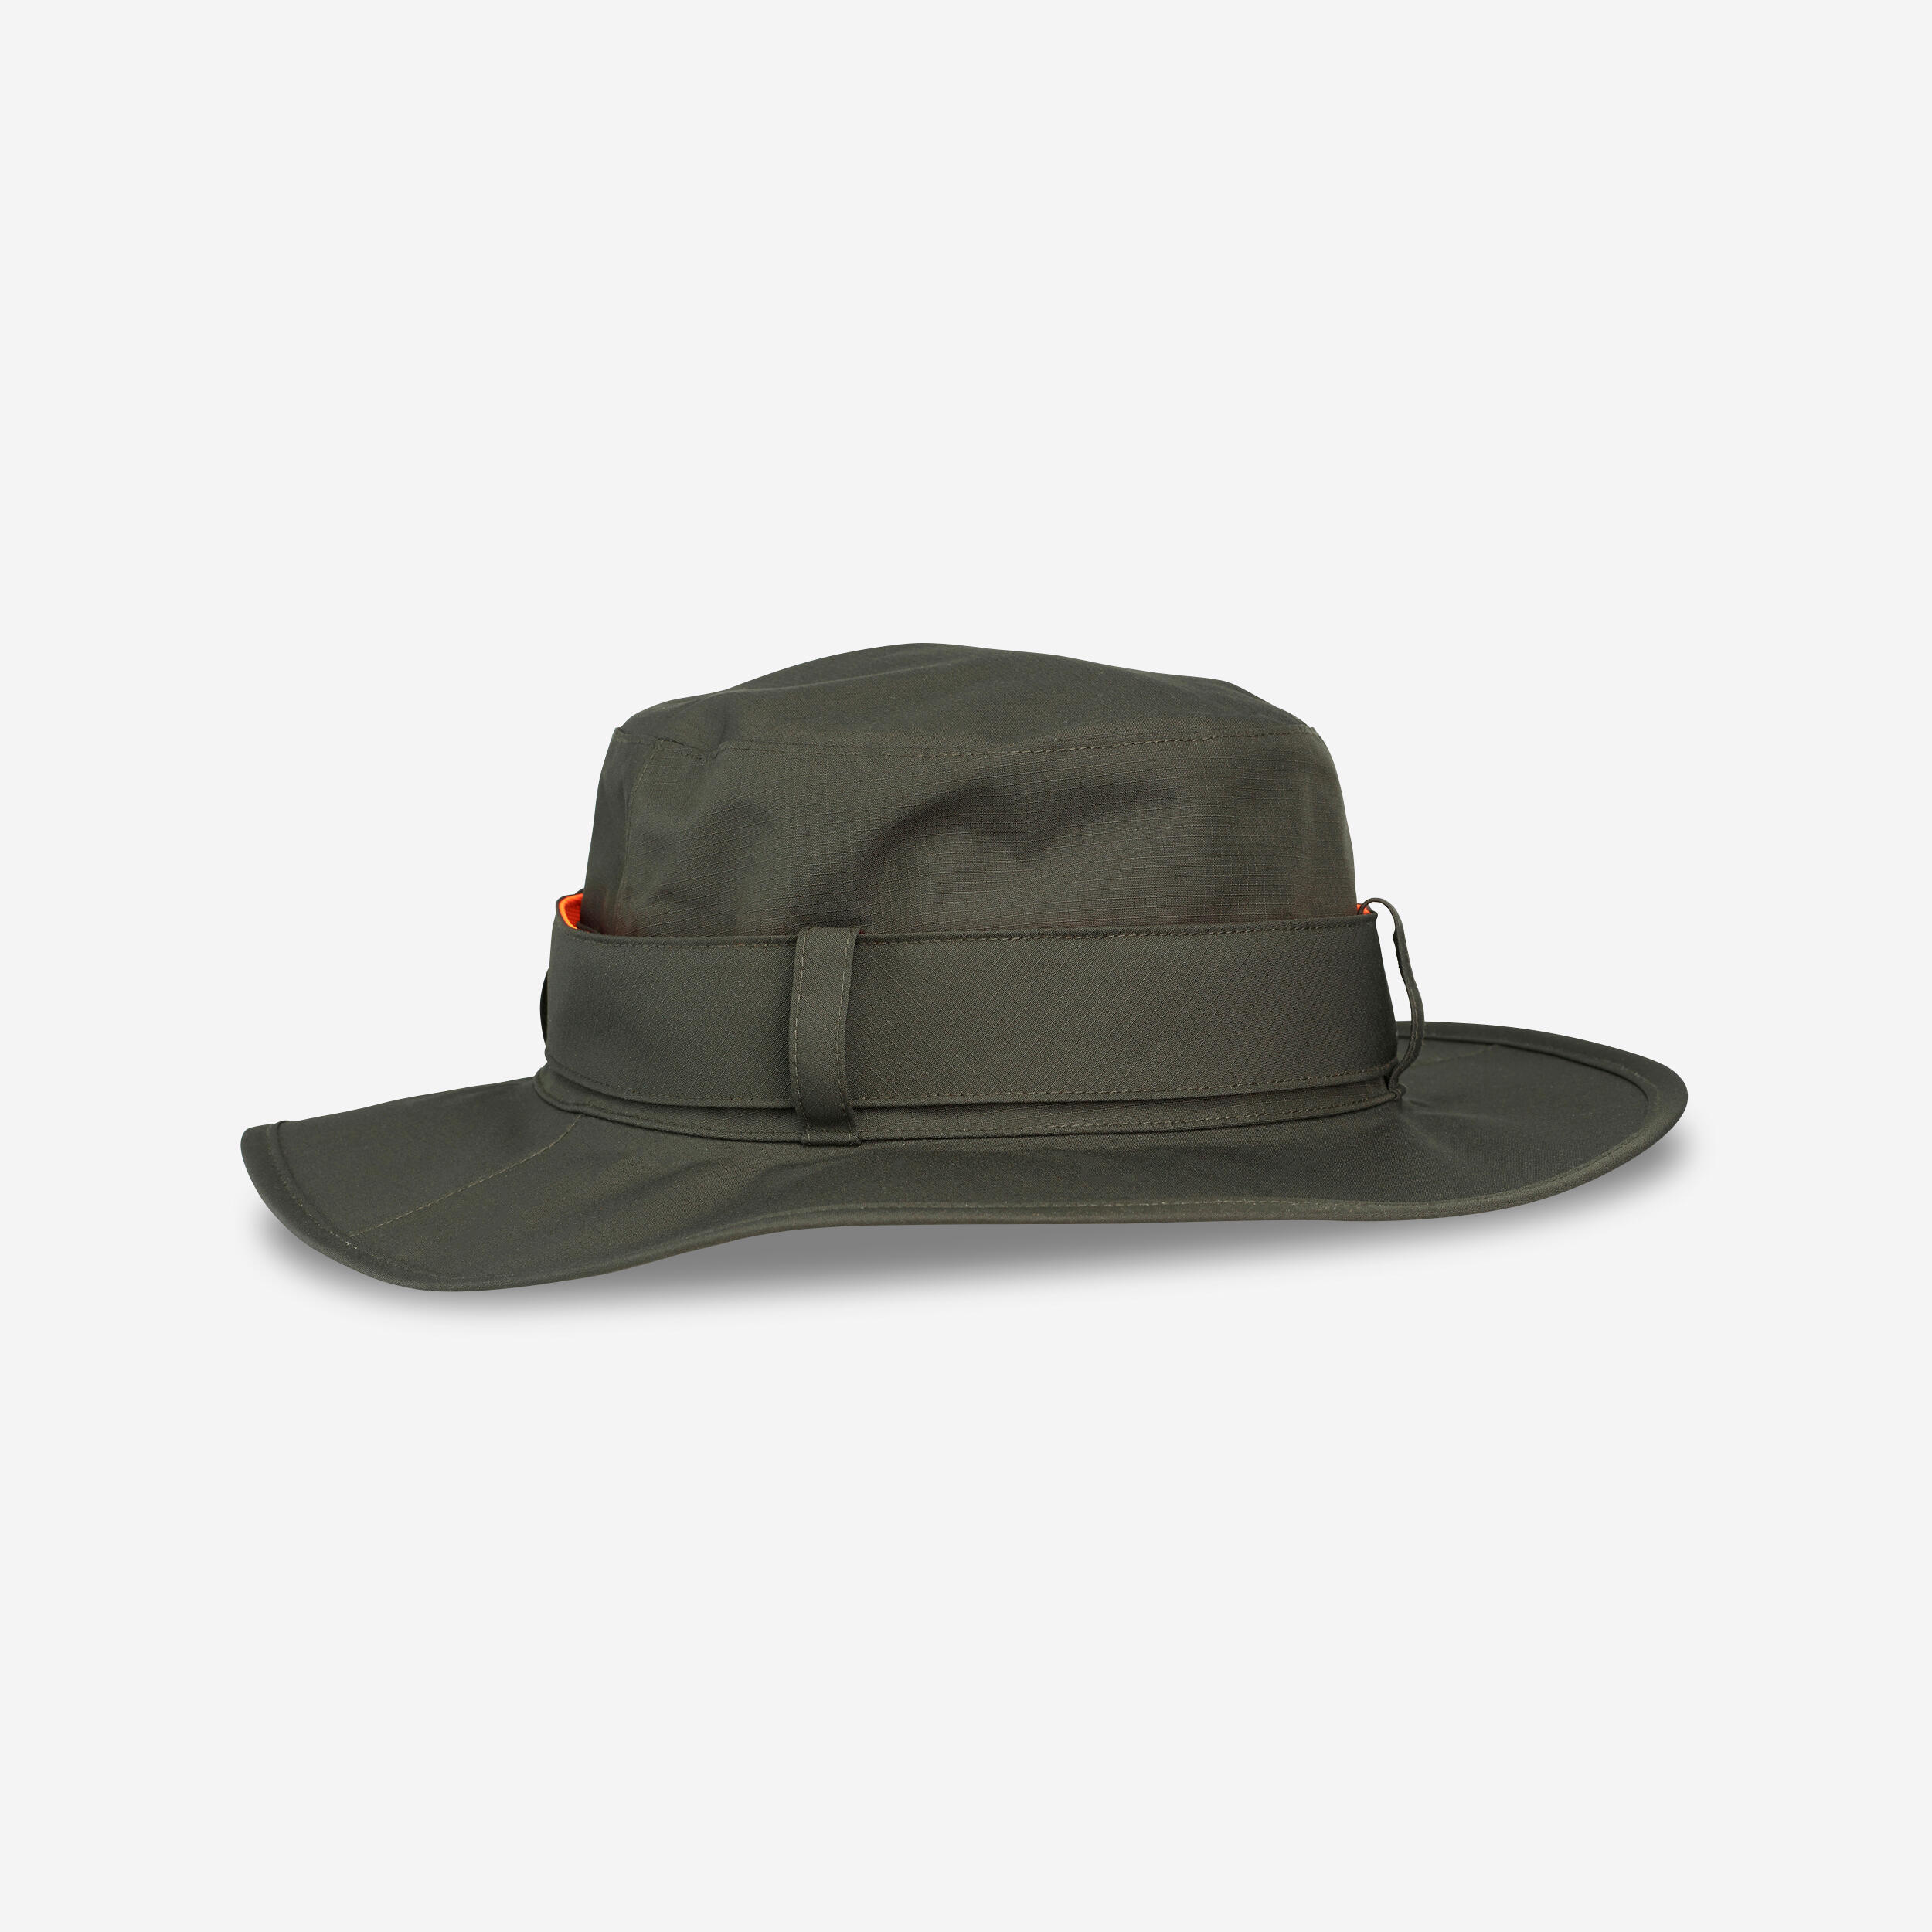 Pălărie SG520 impermeabilă și rezistentă verde bărbați barbati imagine noua